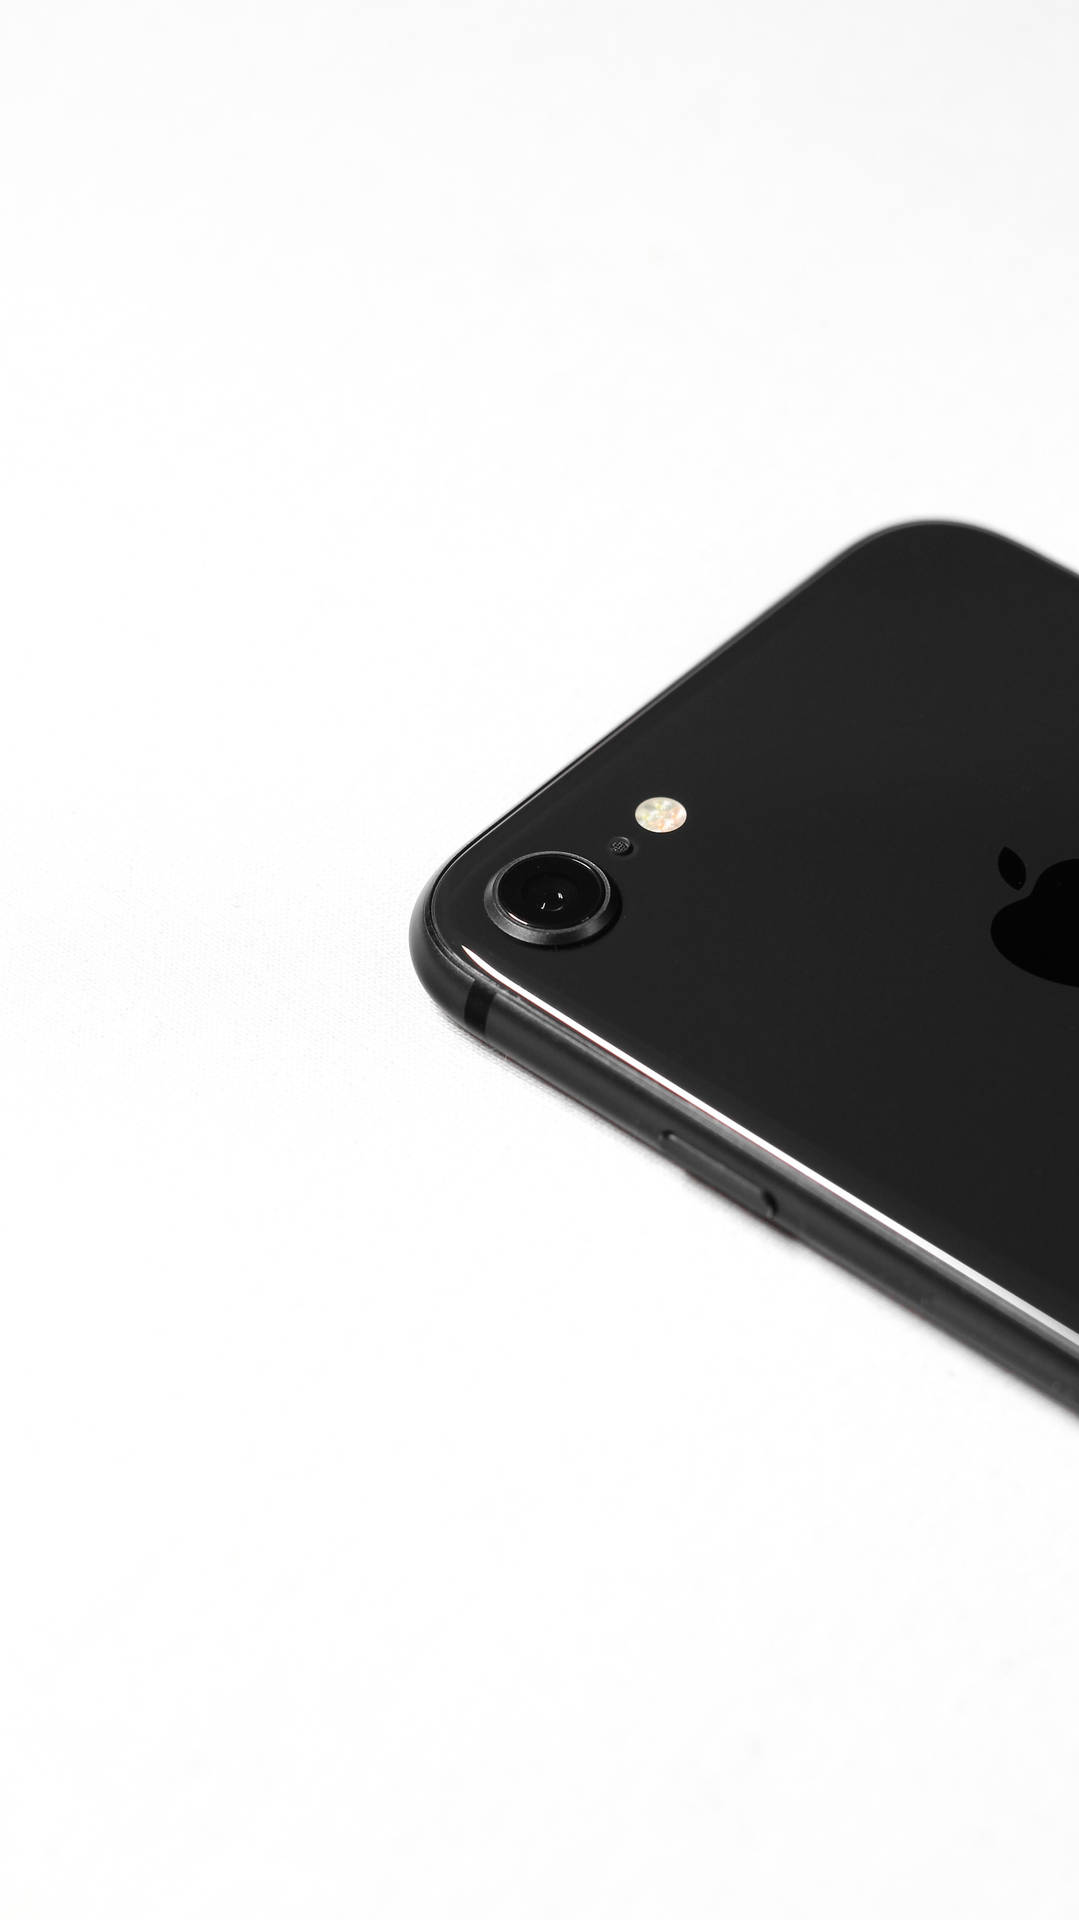 Dark Aesthetic Iphone Apple